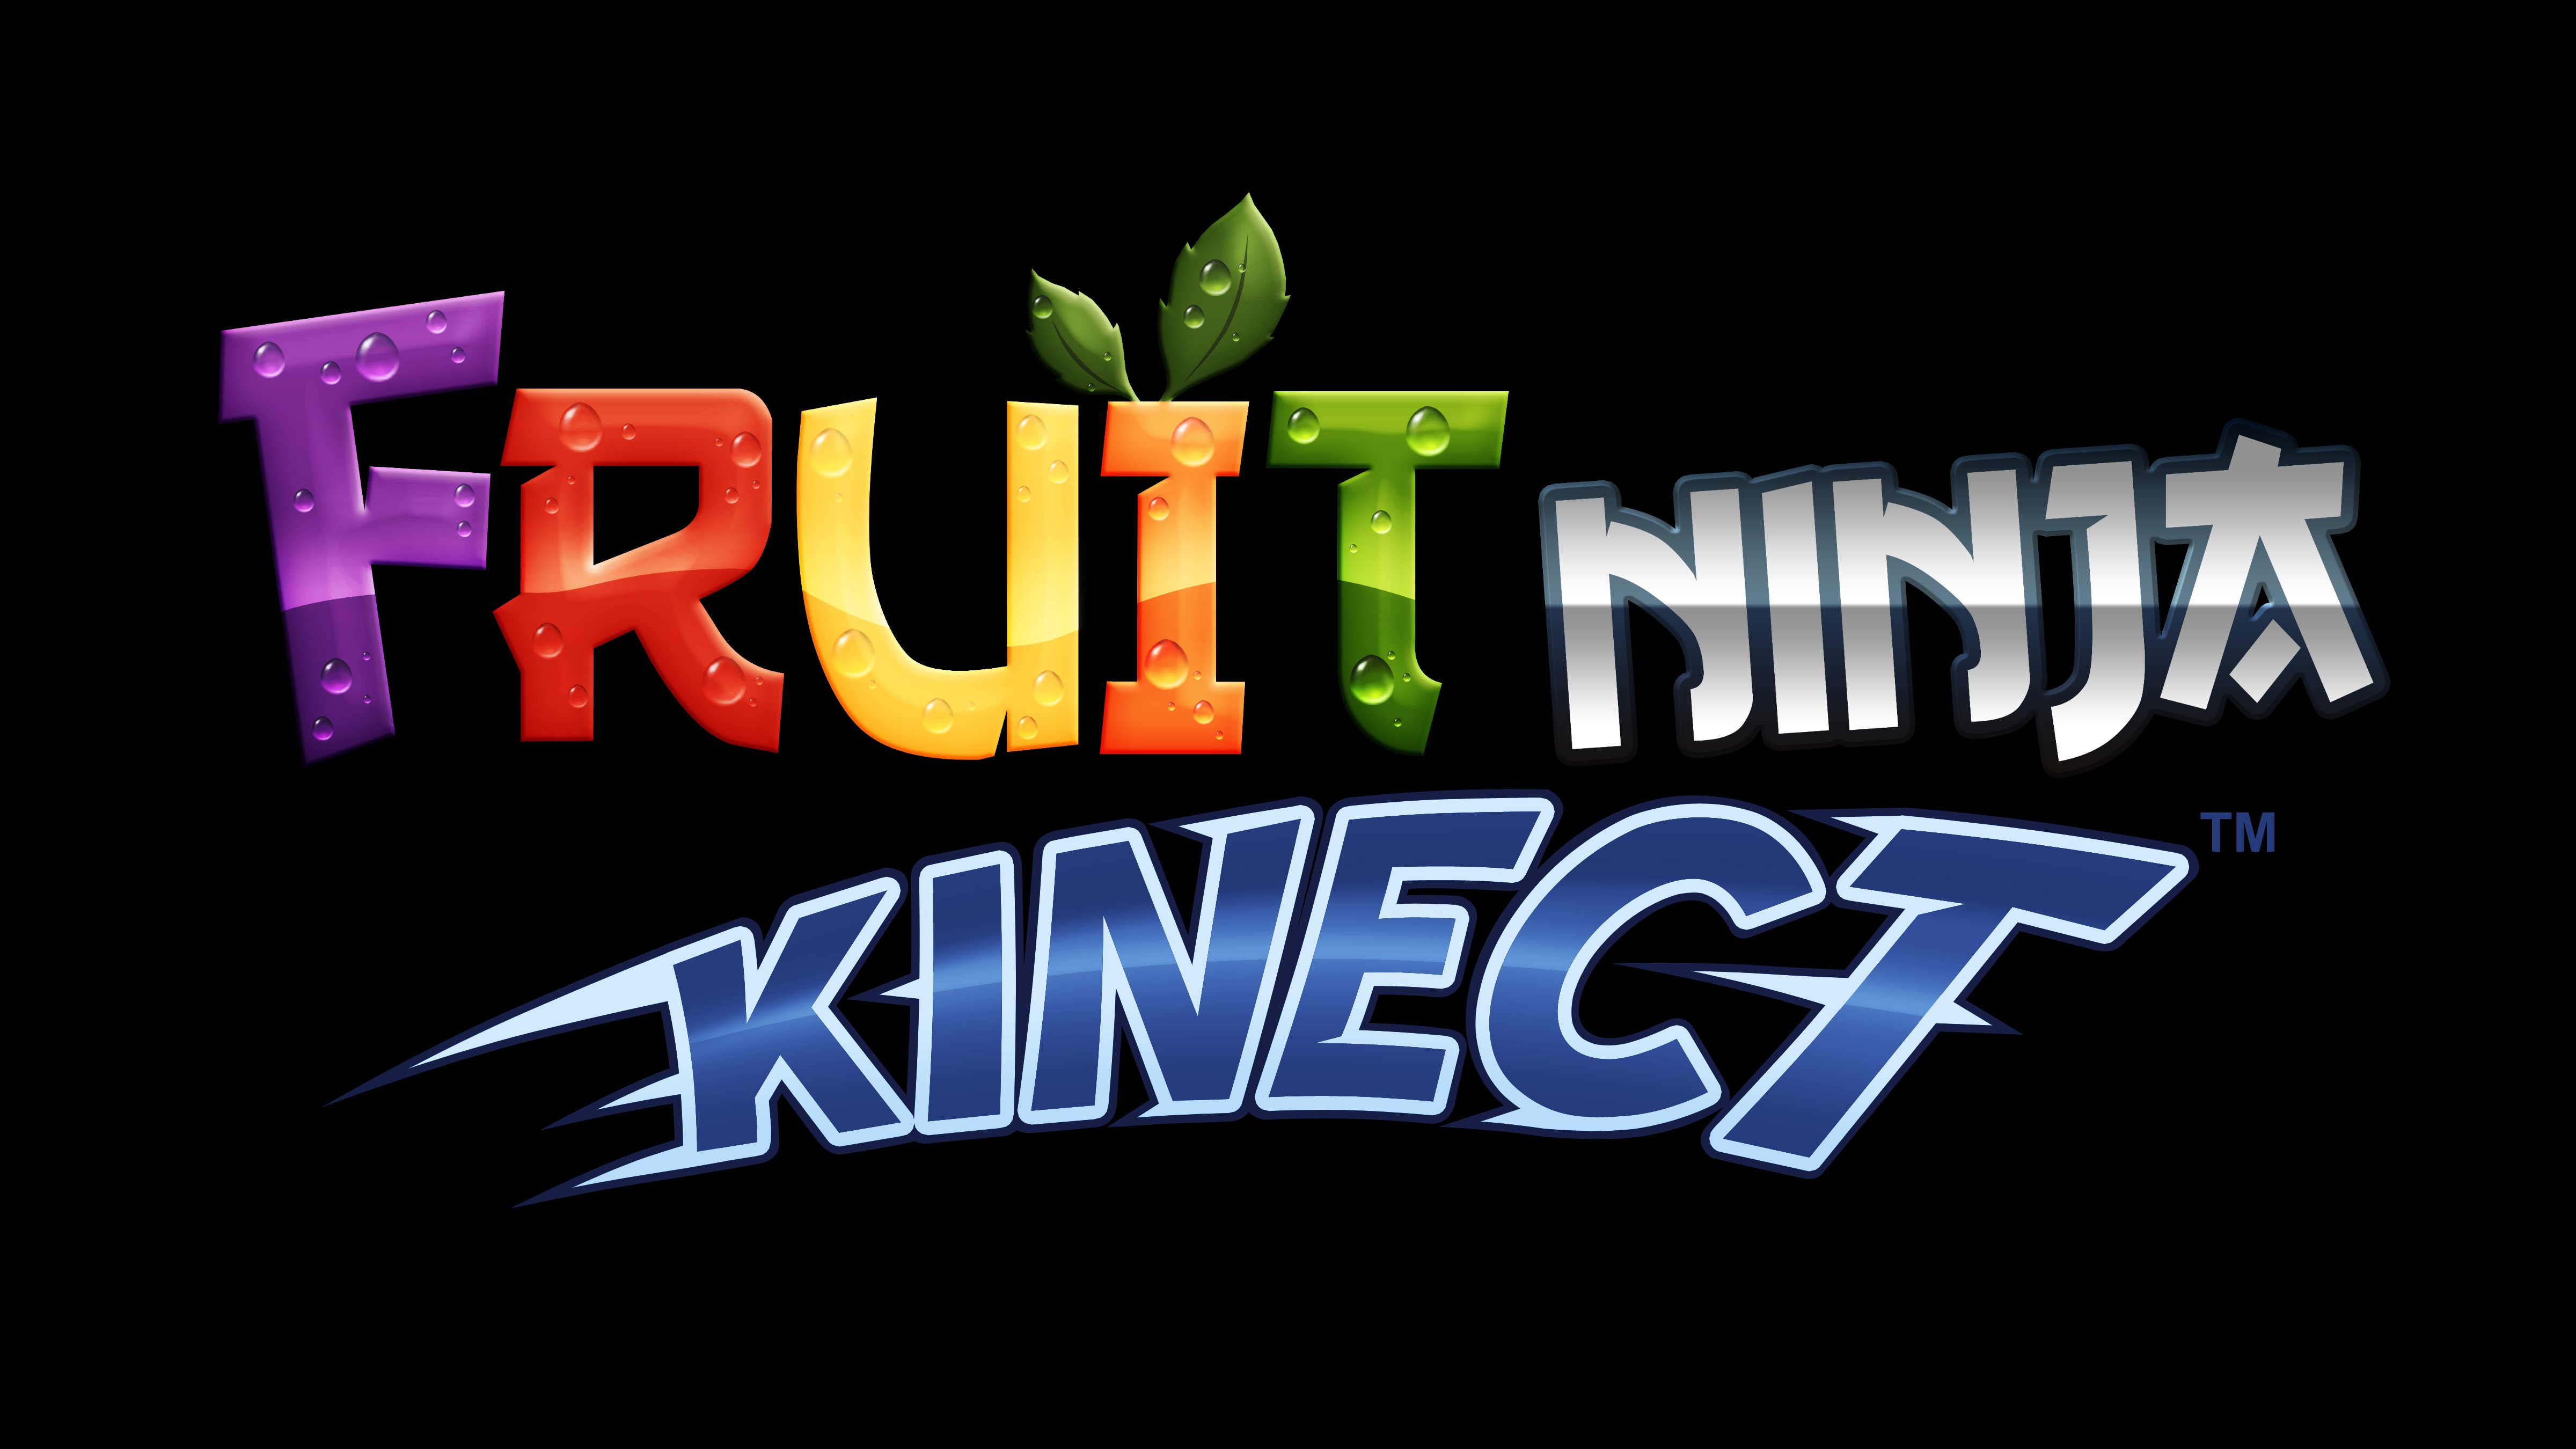 fruit, Ninja, Kinect, Xbox, Microsoft, Adventure, 1fnk, Action, Warrior, Poster Wallpaper